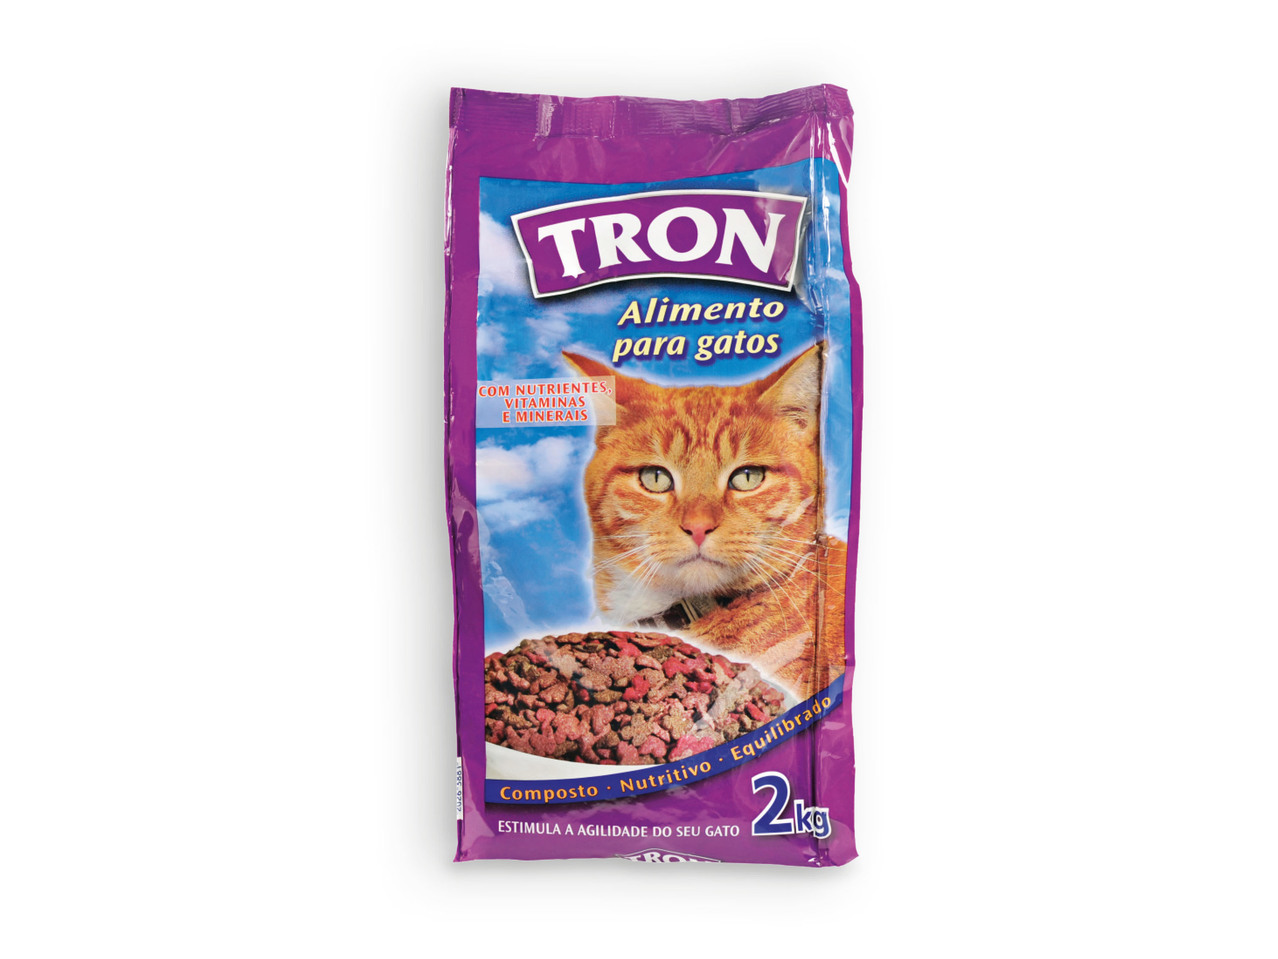 TRON(R) Alimento para Gato